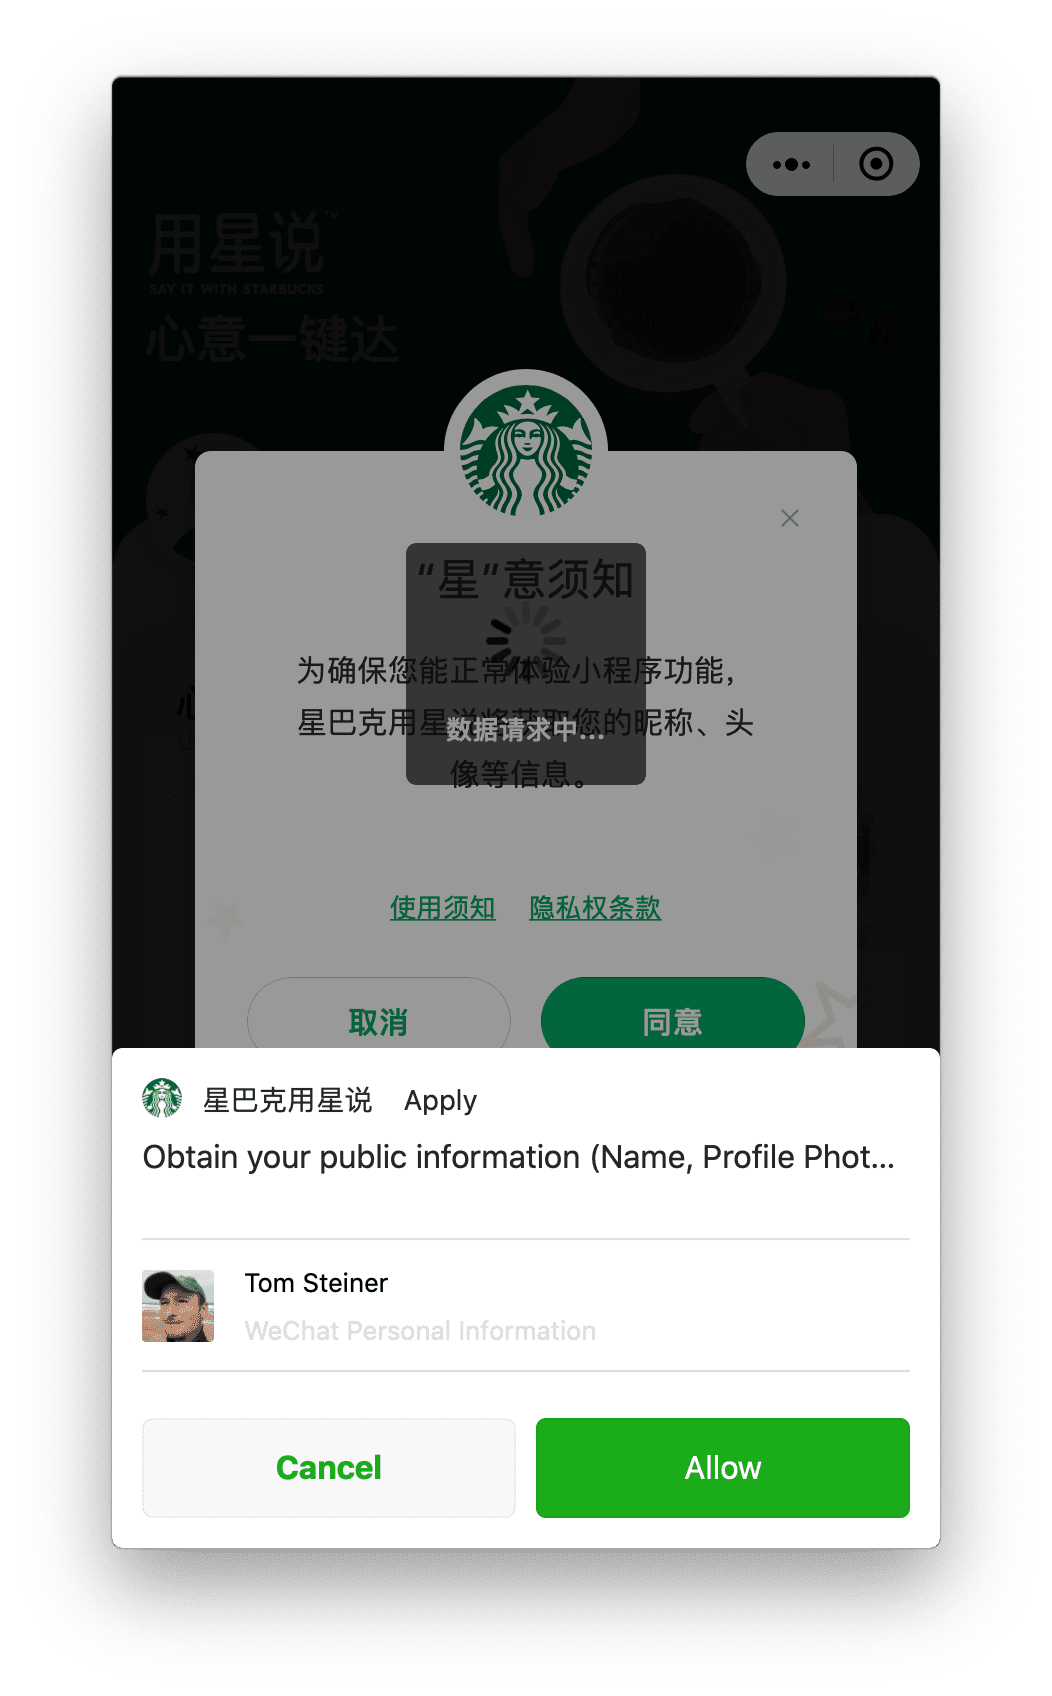 macOS पर चलने वाला Starbucks mini ऐप्लिकेशन, उपयोगकर्ता की प्रोफ़ाइल की अनुमति मांग रहा है. उपयोगकर्ता, सबसे नीचे दिए गए प्रॉम्प्ट की मदद से, यह अनुमति मांग सकता है.